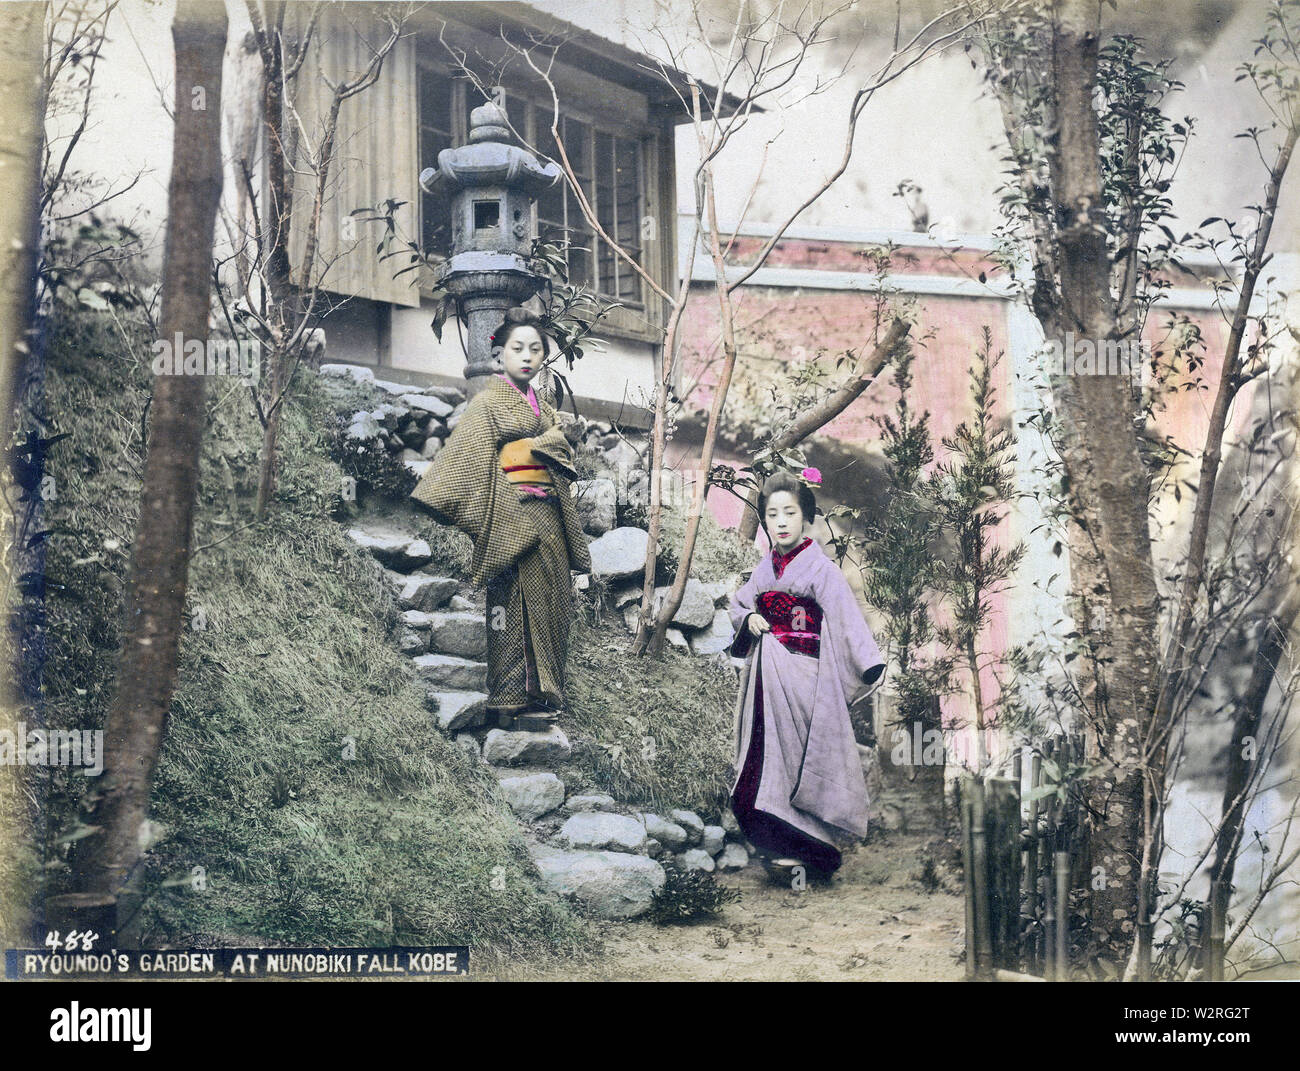 [1890s Japan - Japanische Frauen im Garten] - zwei Frauen im Garten der Fotografie studio Ryoundo in Kobe. Hinter der Frau auf der linken Seite einen großen Stein Laterne sichtbar ist. Die Ryoundo Studio und Shop in der Nähe von Nunobiki fällt gelegen und bot vor allem für ausländische Touristen. Auf der Rückseite der Bridge Nunobiki gesehen werden kann. Die Brücke besteht heute noch. 19 Vintage albumen Foto. Stockfoto